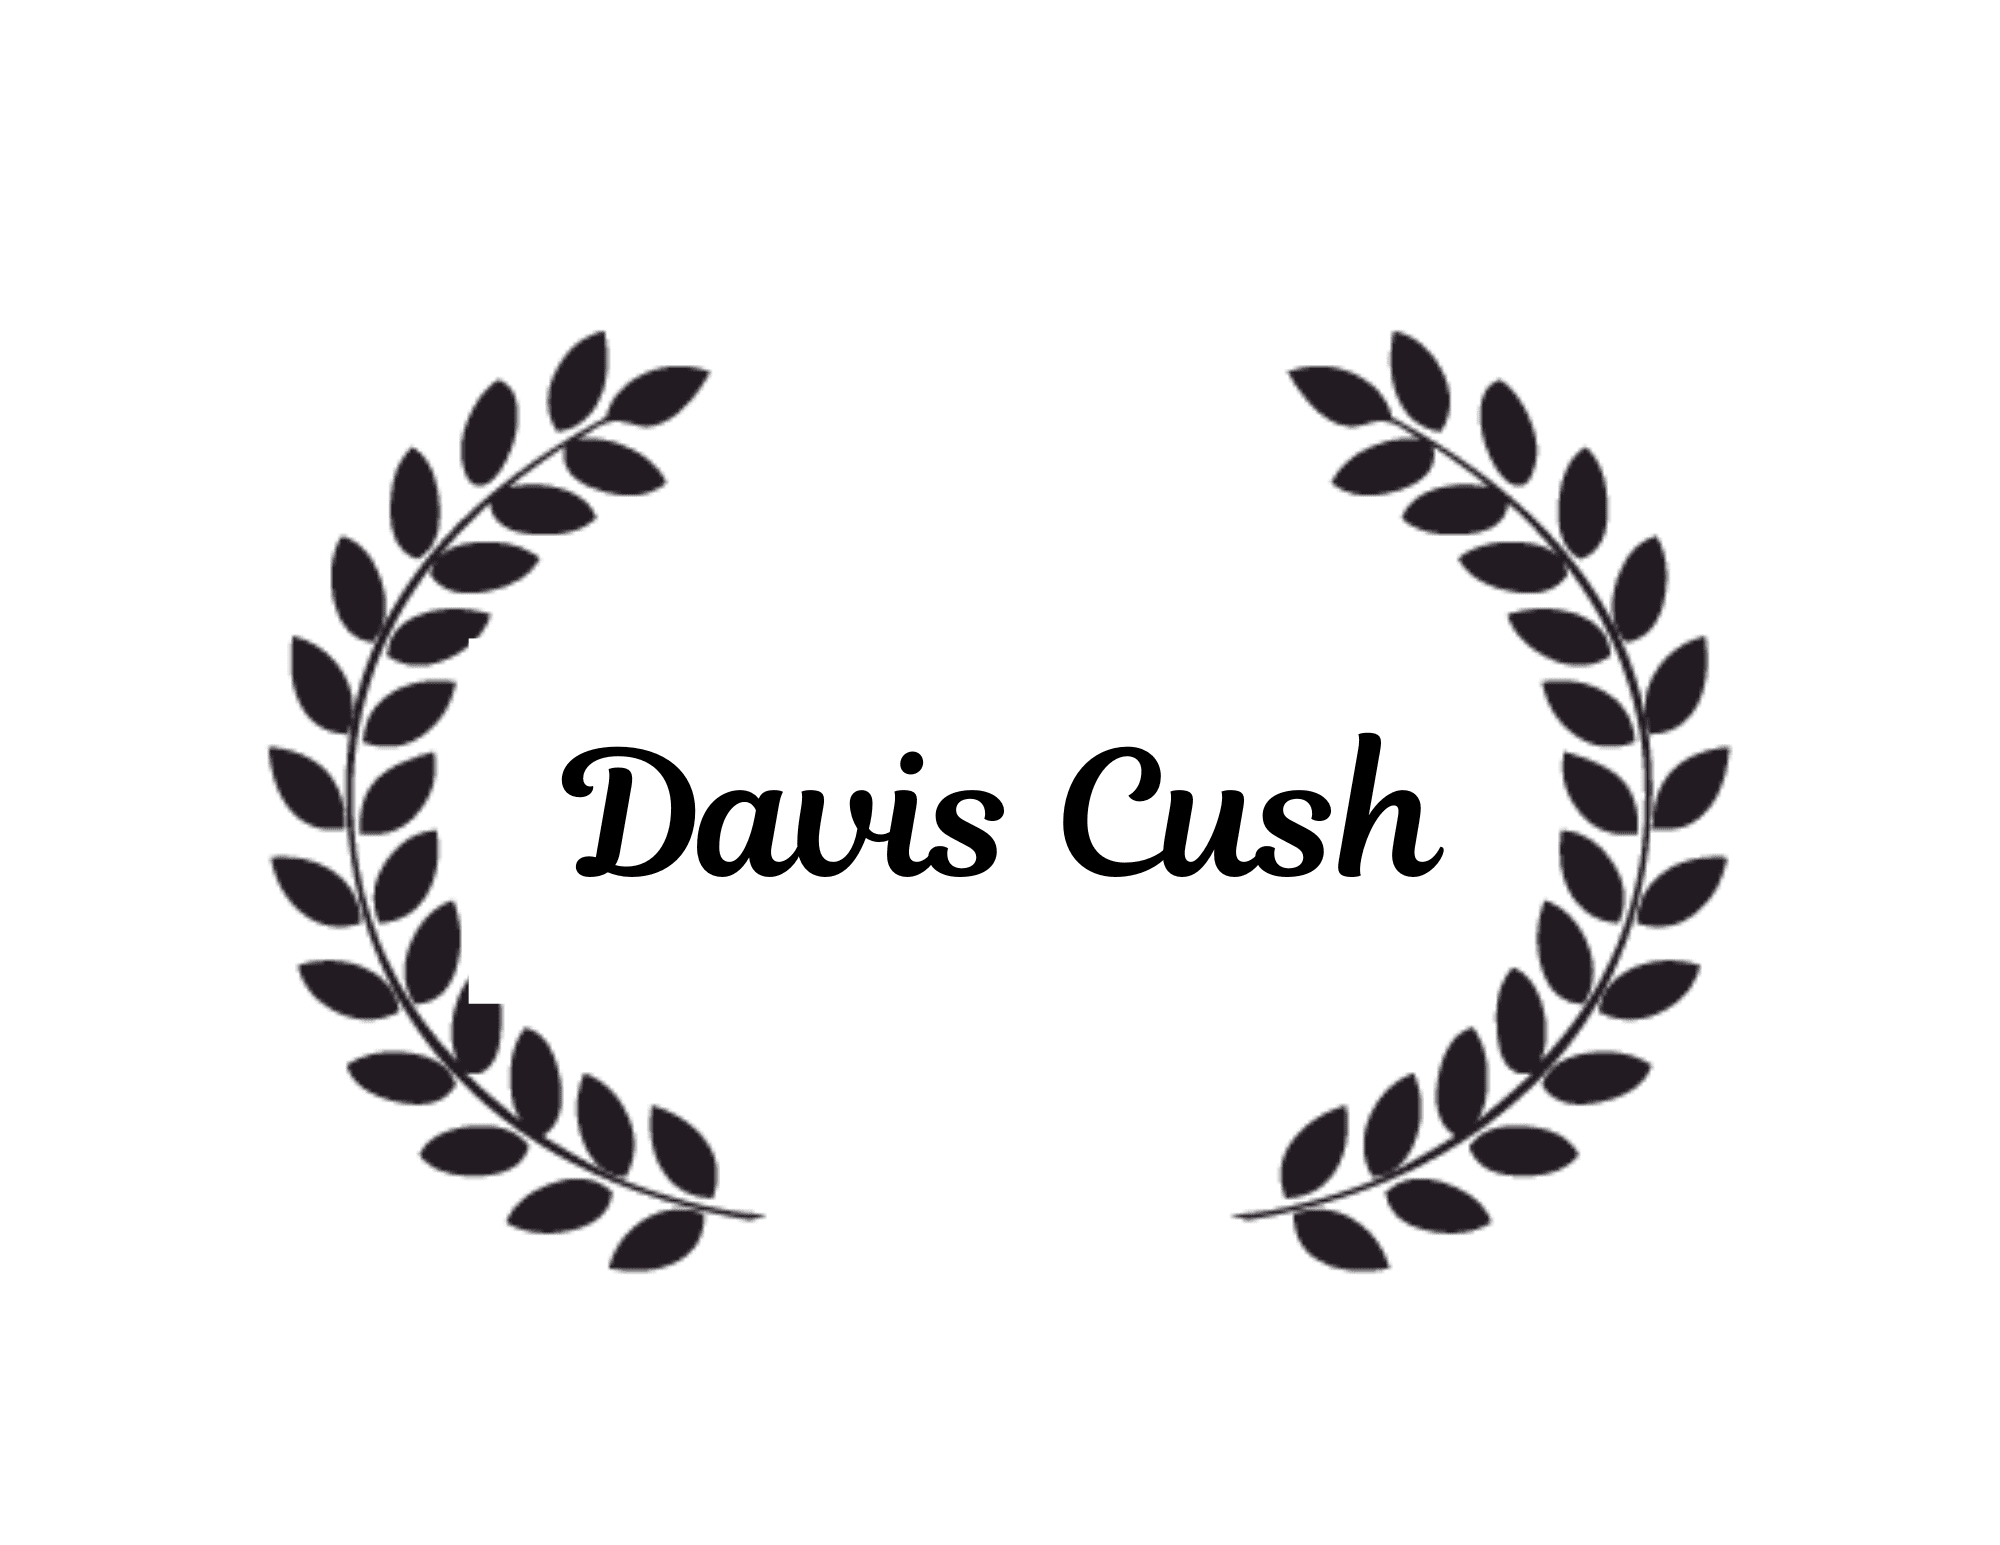 Davis Cush